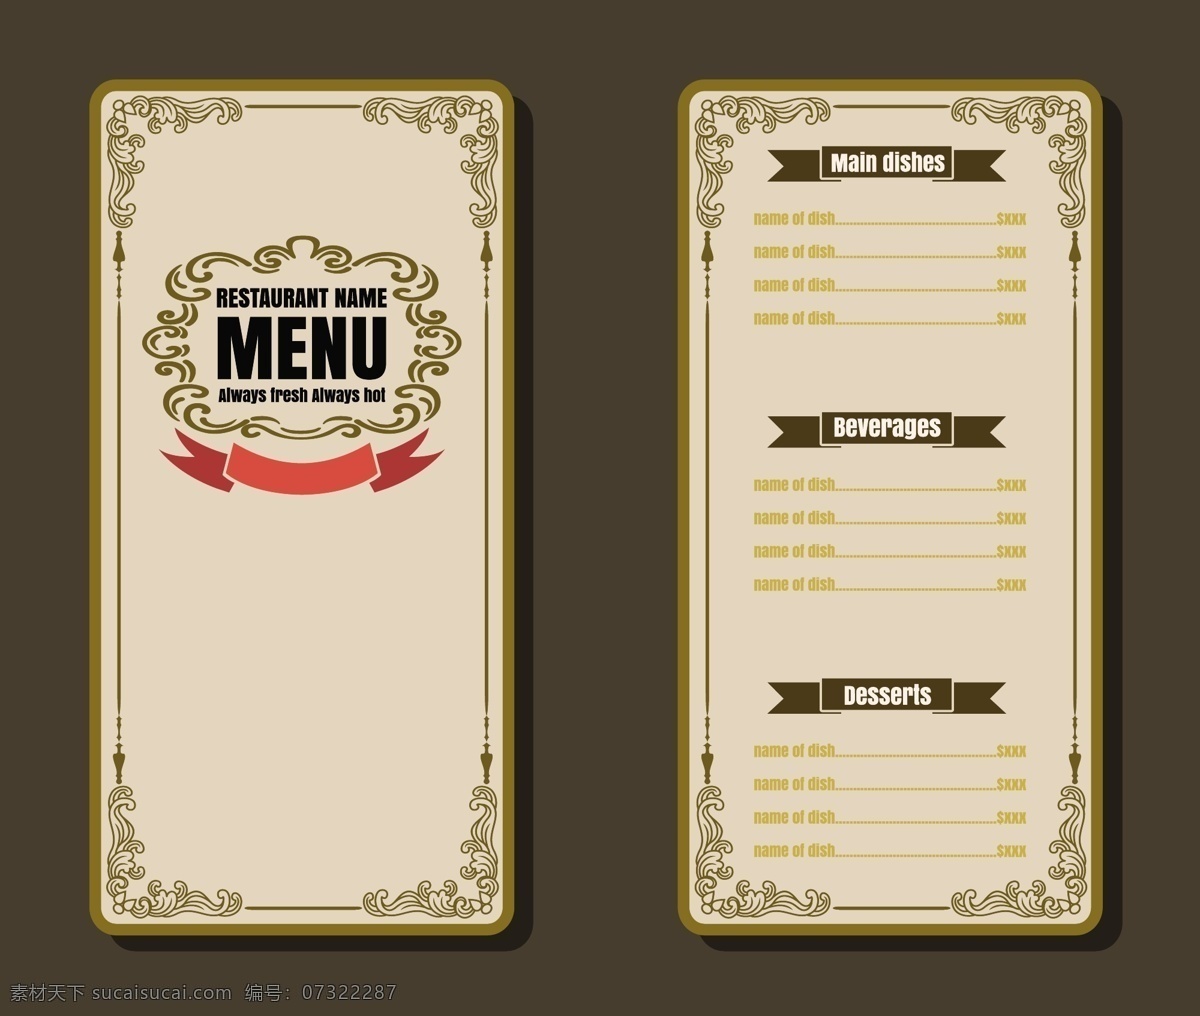 时尚 西餐 美食 餐馆 菜单 展示 菜谱设计 矢量素材 菜谱素材 餐饮美食 菜单背景